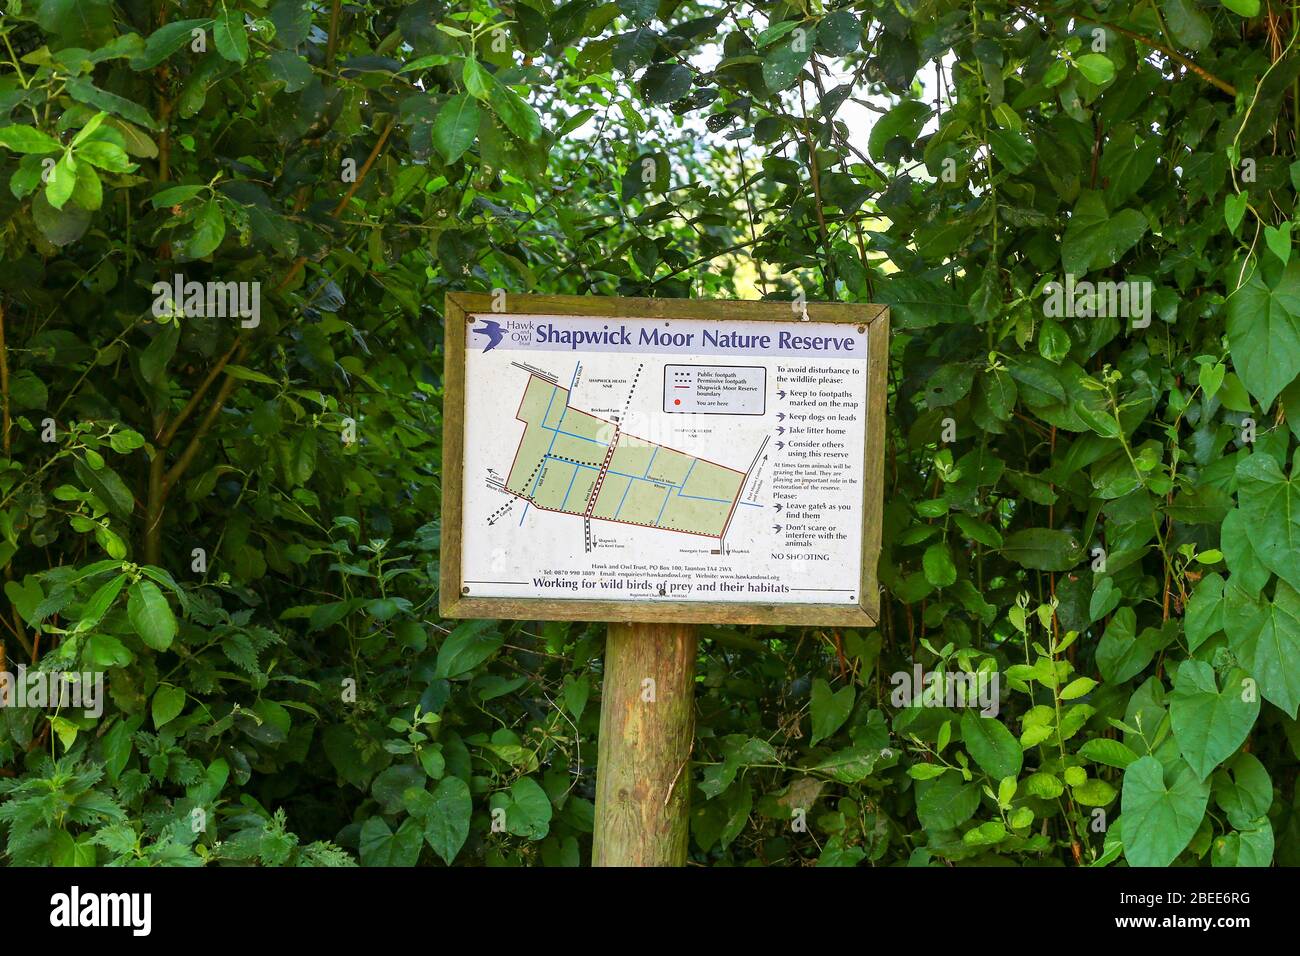 Une carte d'information à la réserve naturelle Shapwick Moor, qui fait partie des Avalon Marshes, Somerset, Angleterre, Royaume-Uni Banque D'Images